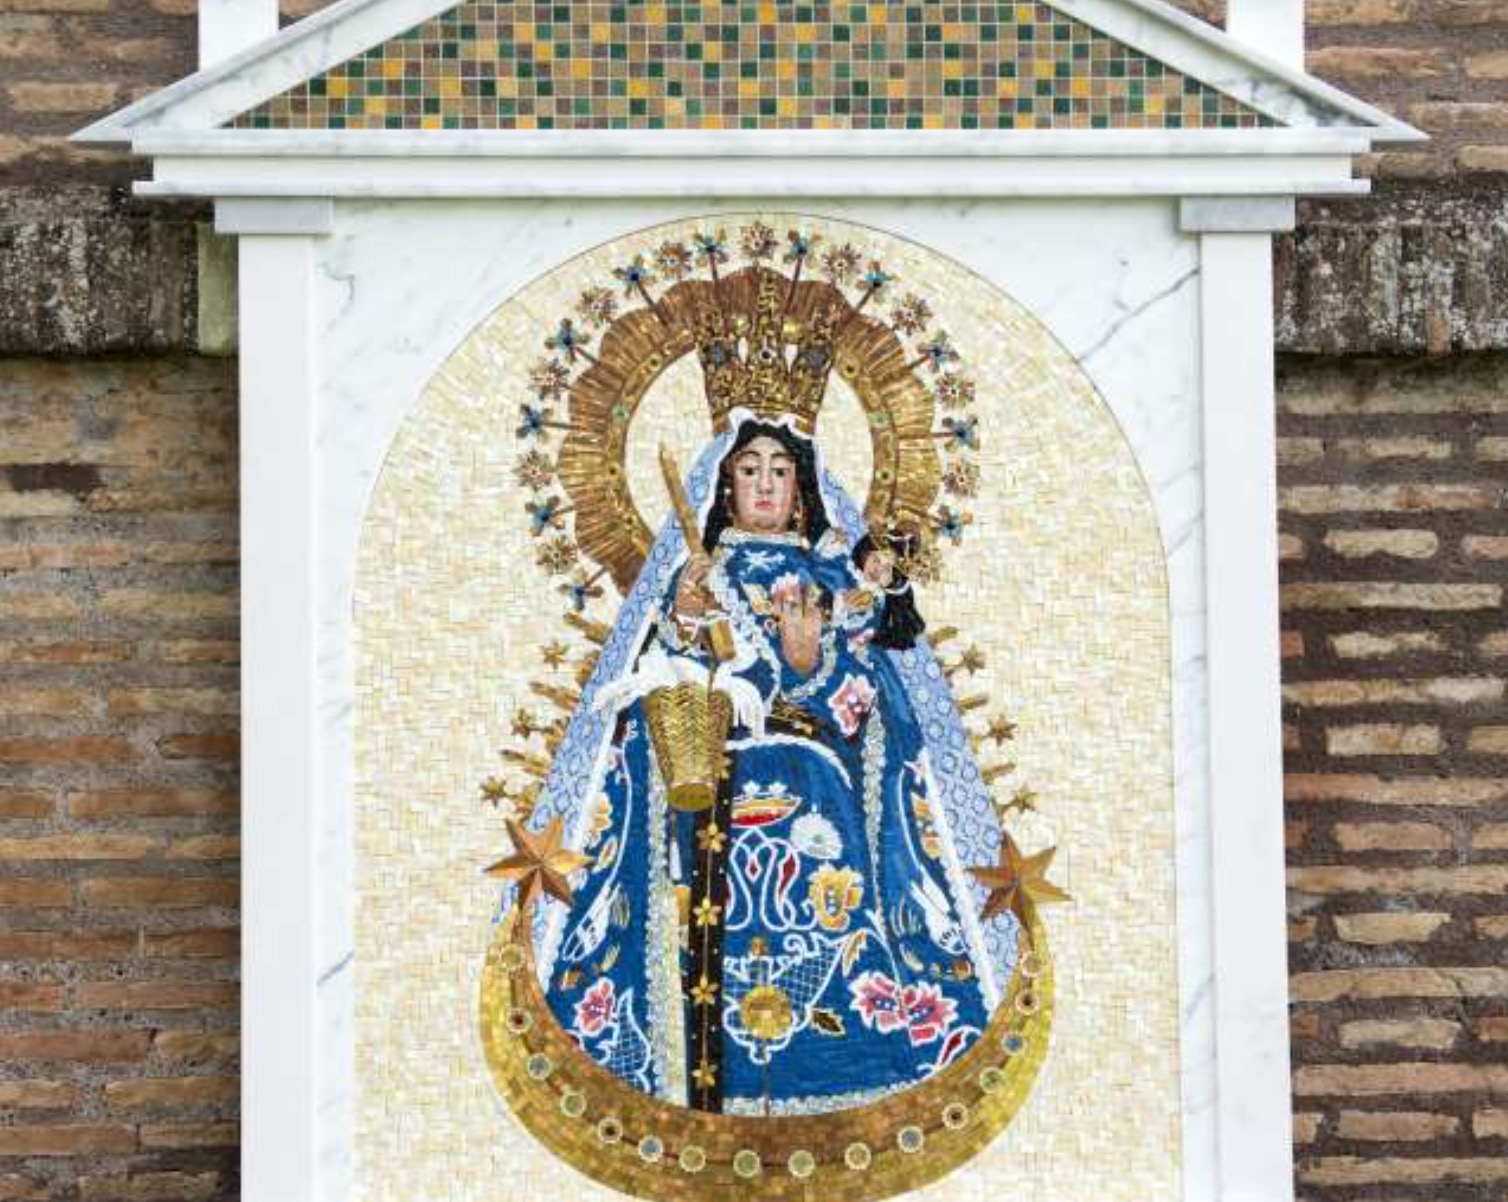 Mosaico representando a la Virgen de Copacabana en los Jardines del Vaticano - (Fto. Cortesía embajada de Boliva ante la Santa Sede)